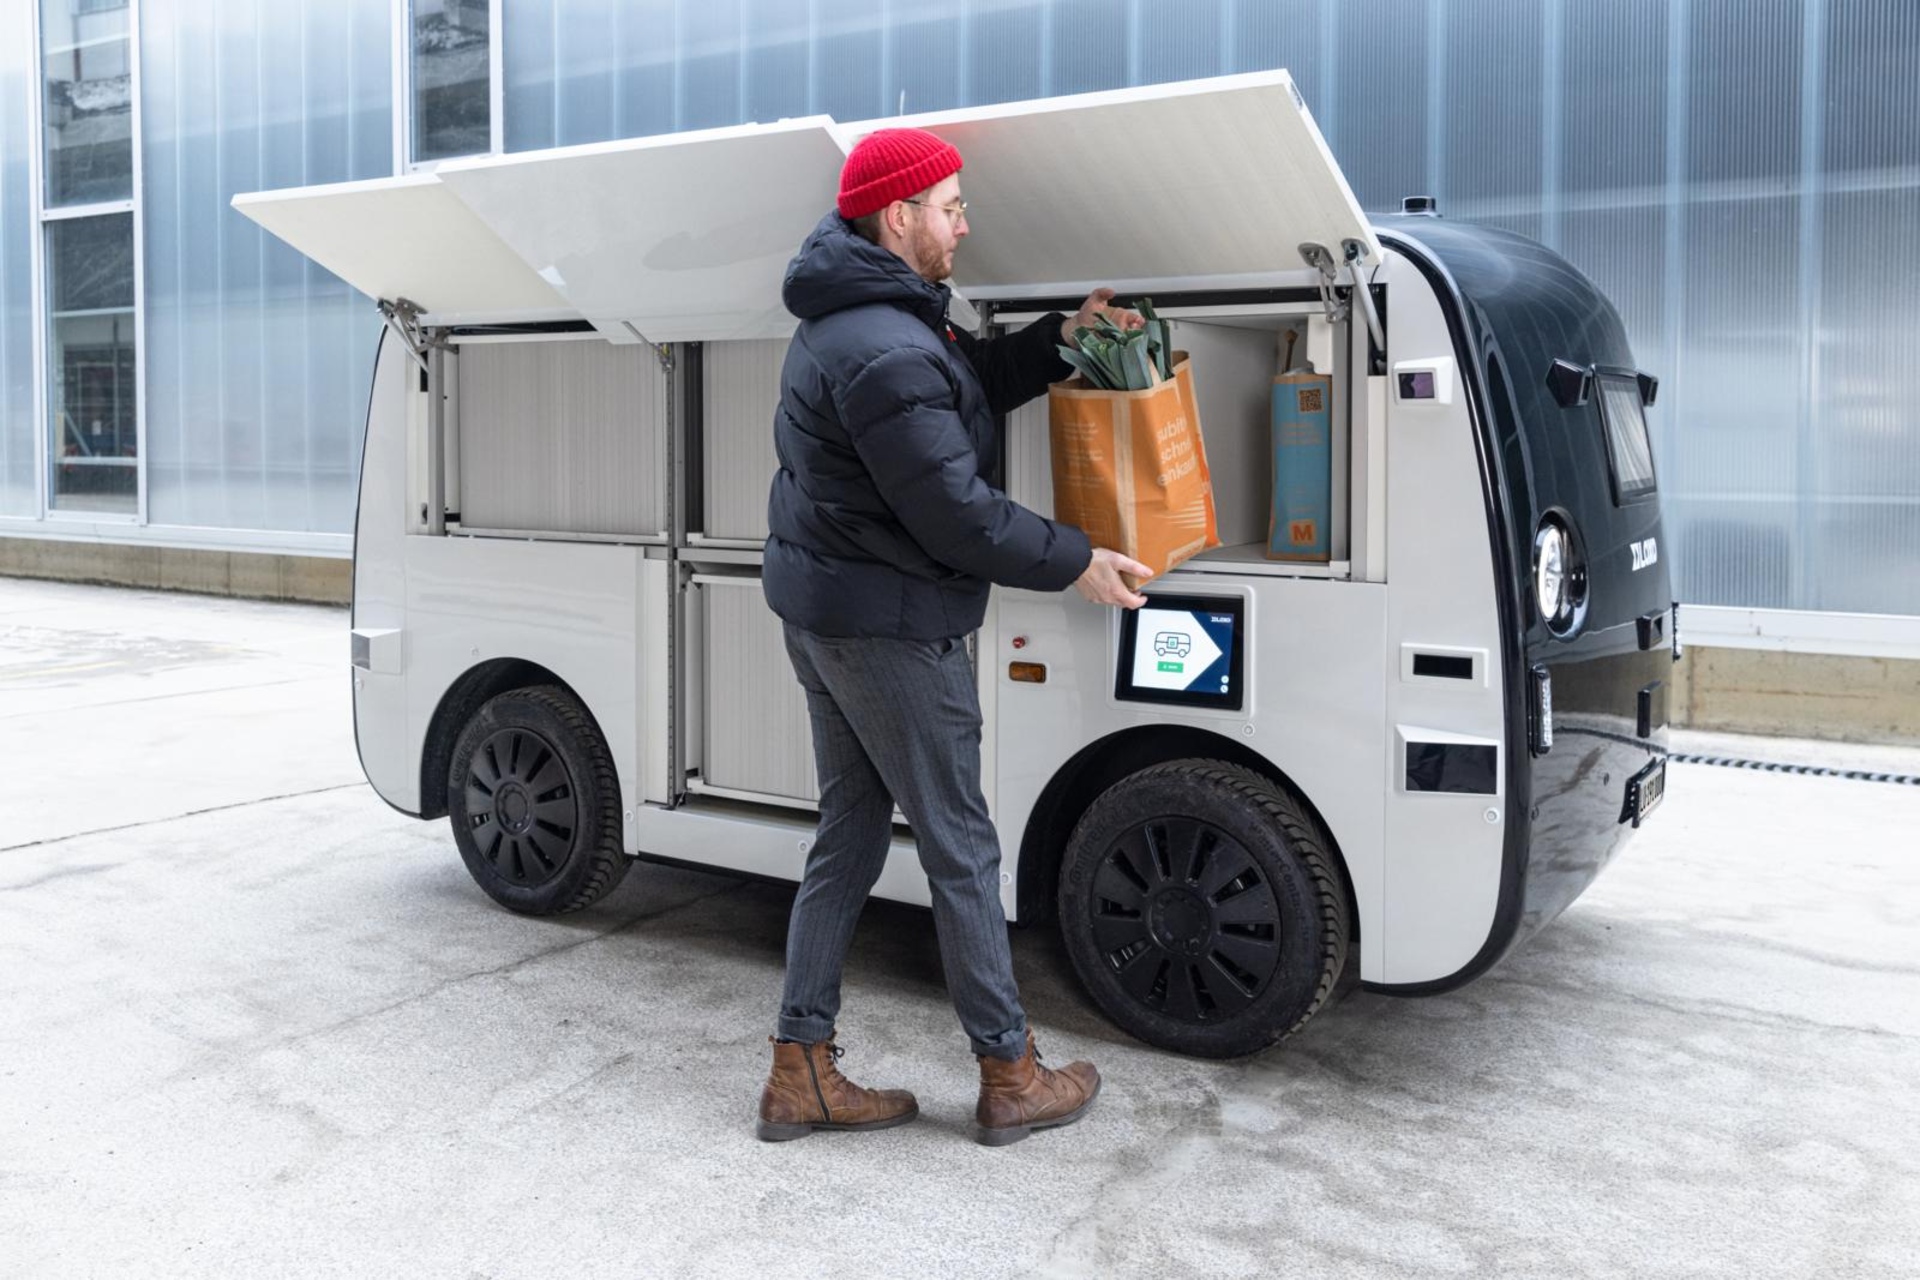 Migronomous: den selvkjørende elektriske varebilen som daglig forbinder supermarkedet Migros og Schindler-fabrikkene i Ebikon i kantonen Luzern